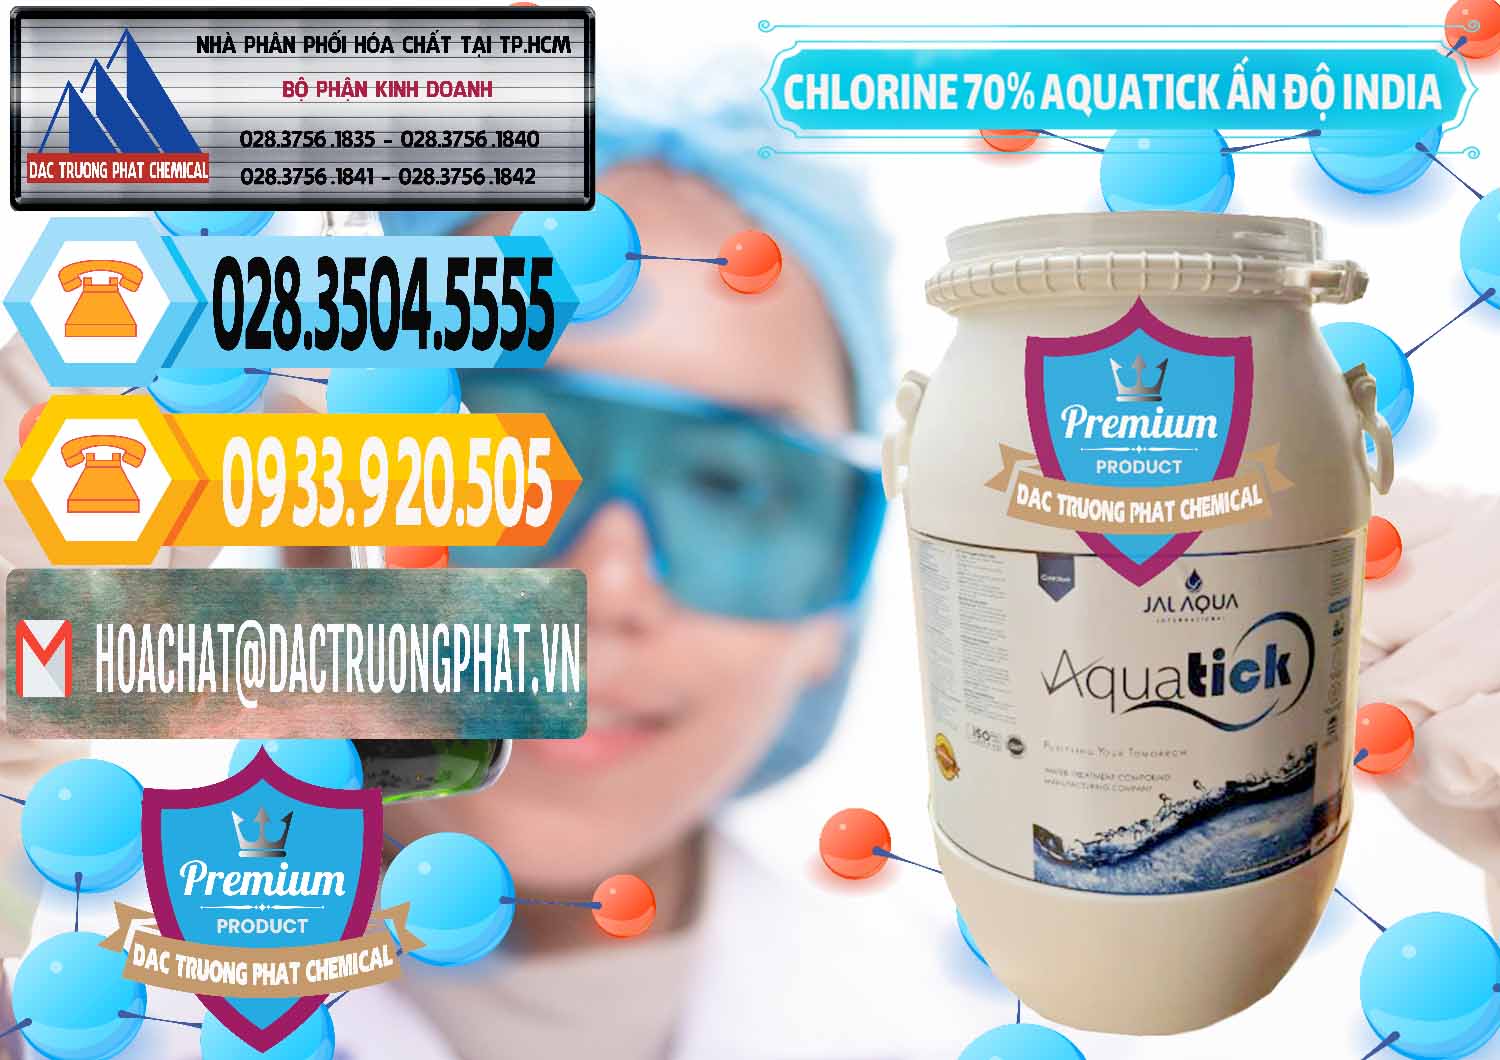 Cty chuyên cung ứng & bán Chlorine – Clorin 70% Aquatick Jal Aqua Ấn Độ India - 0215 - Nhà cung cấp & phân phối hóa chất tại TP.HCM - hoachattayrua.net